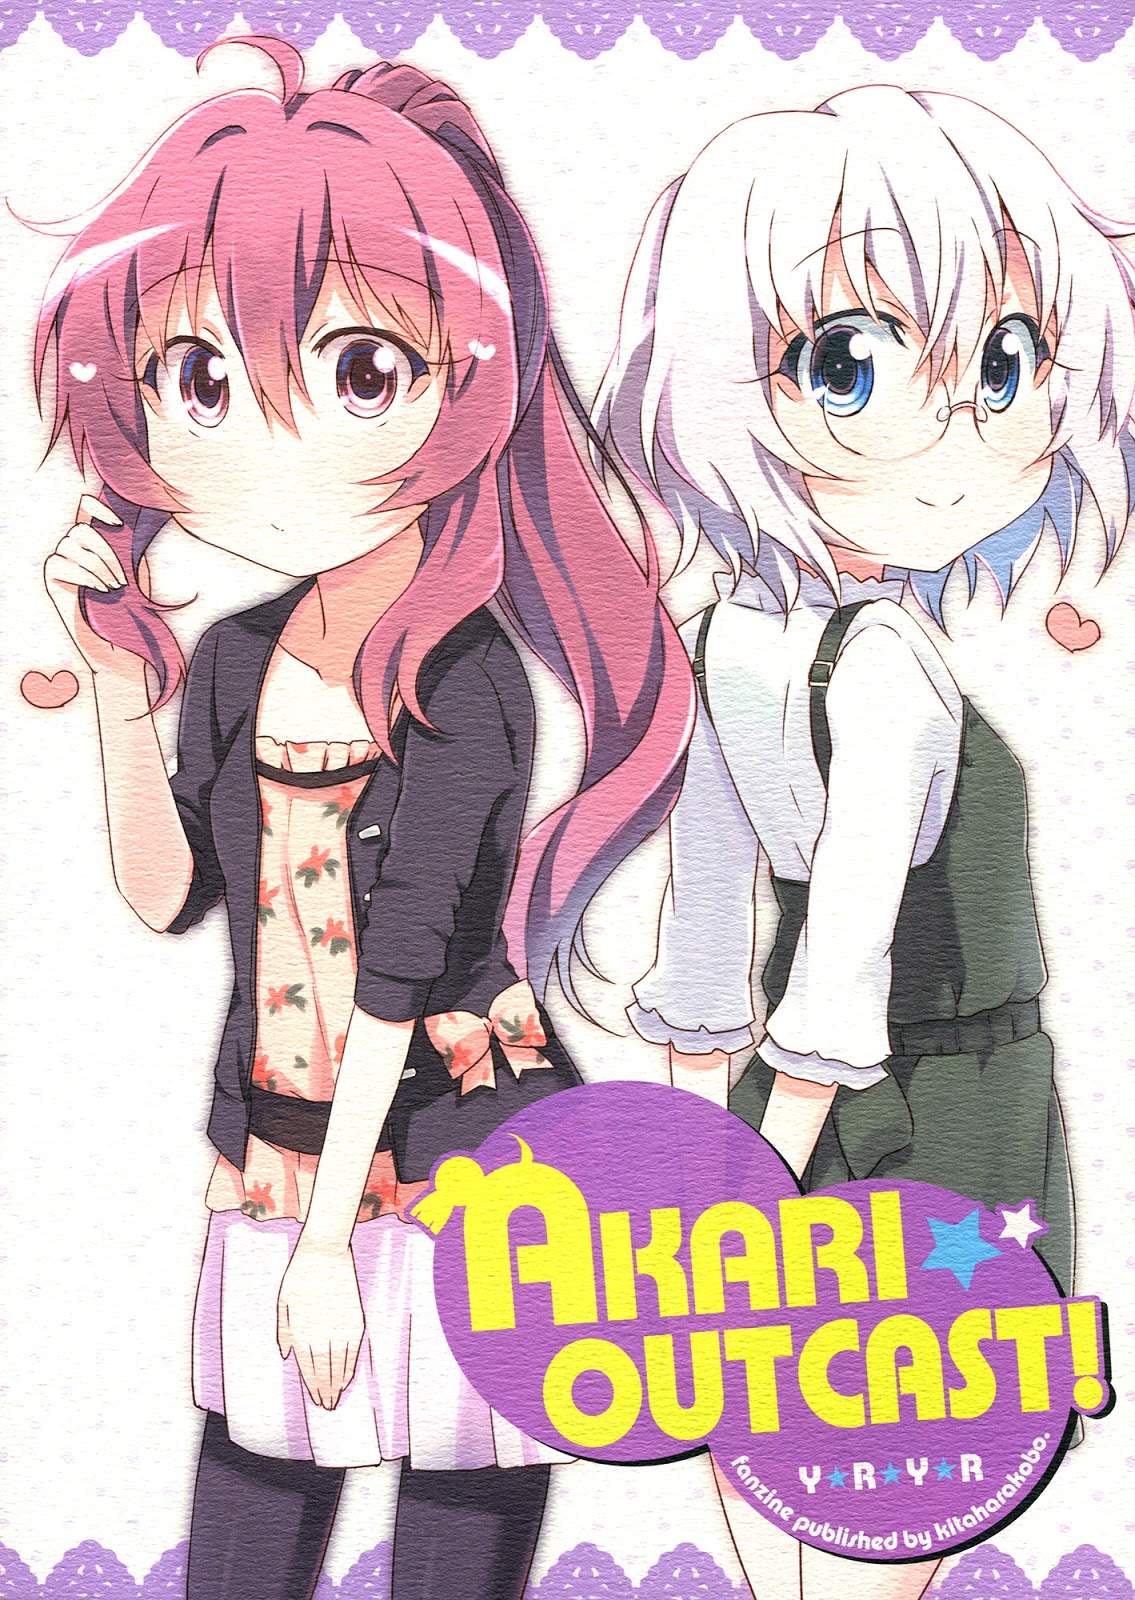 Hentai Manga Comic-Akari Outcast!-Read-1